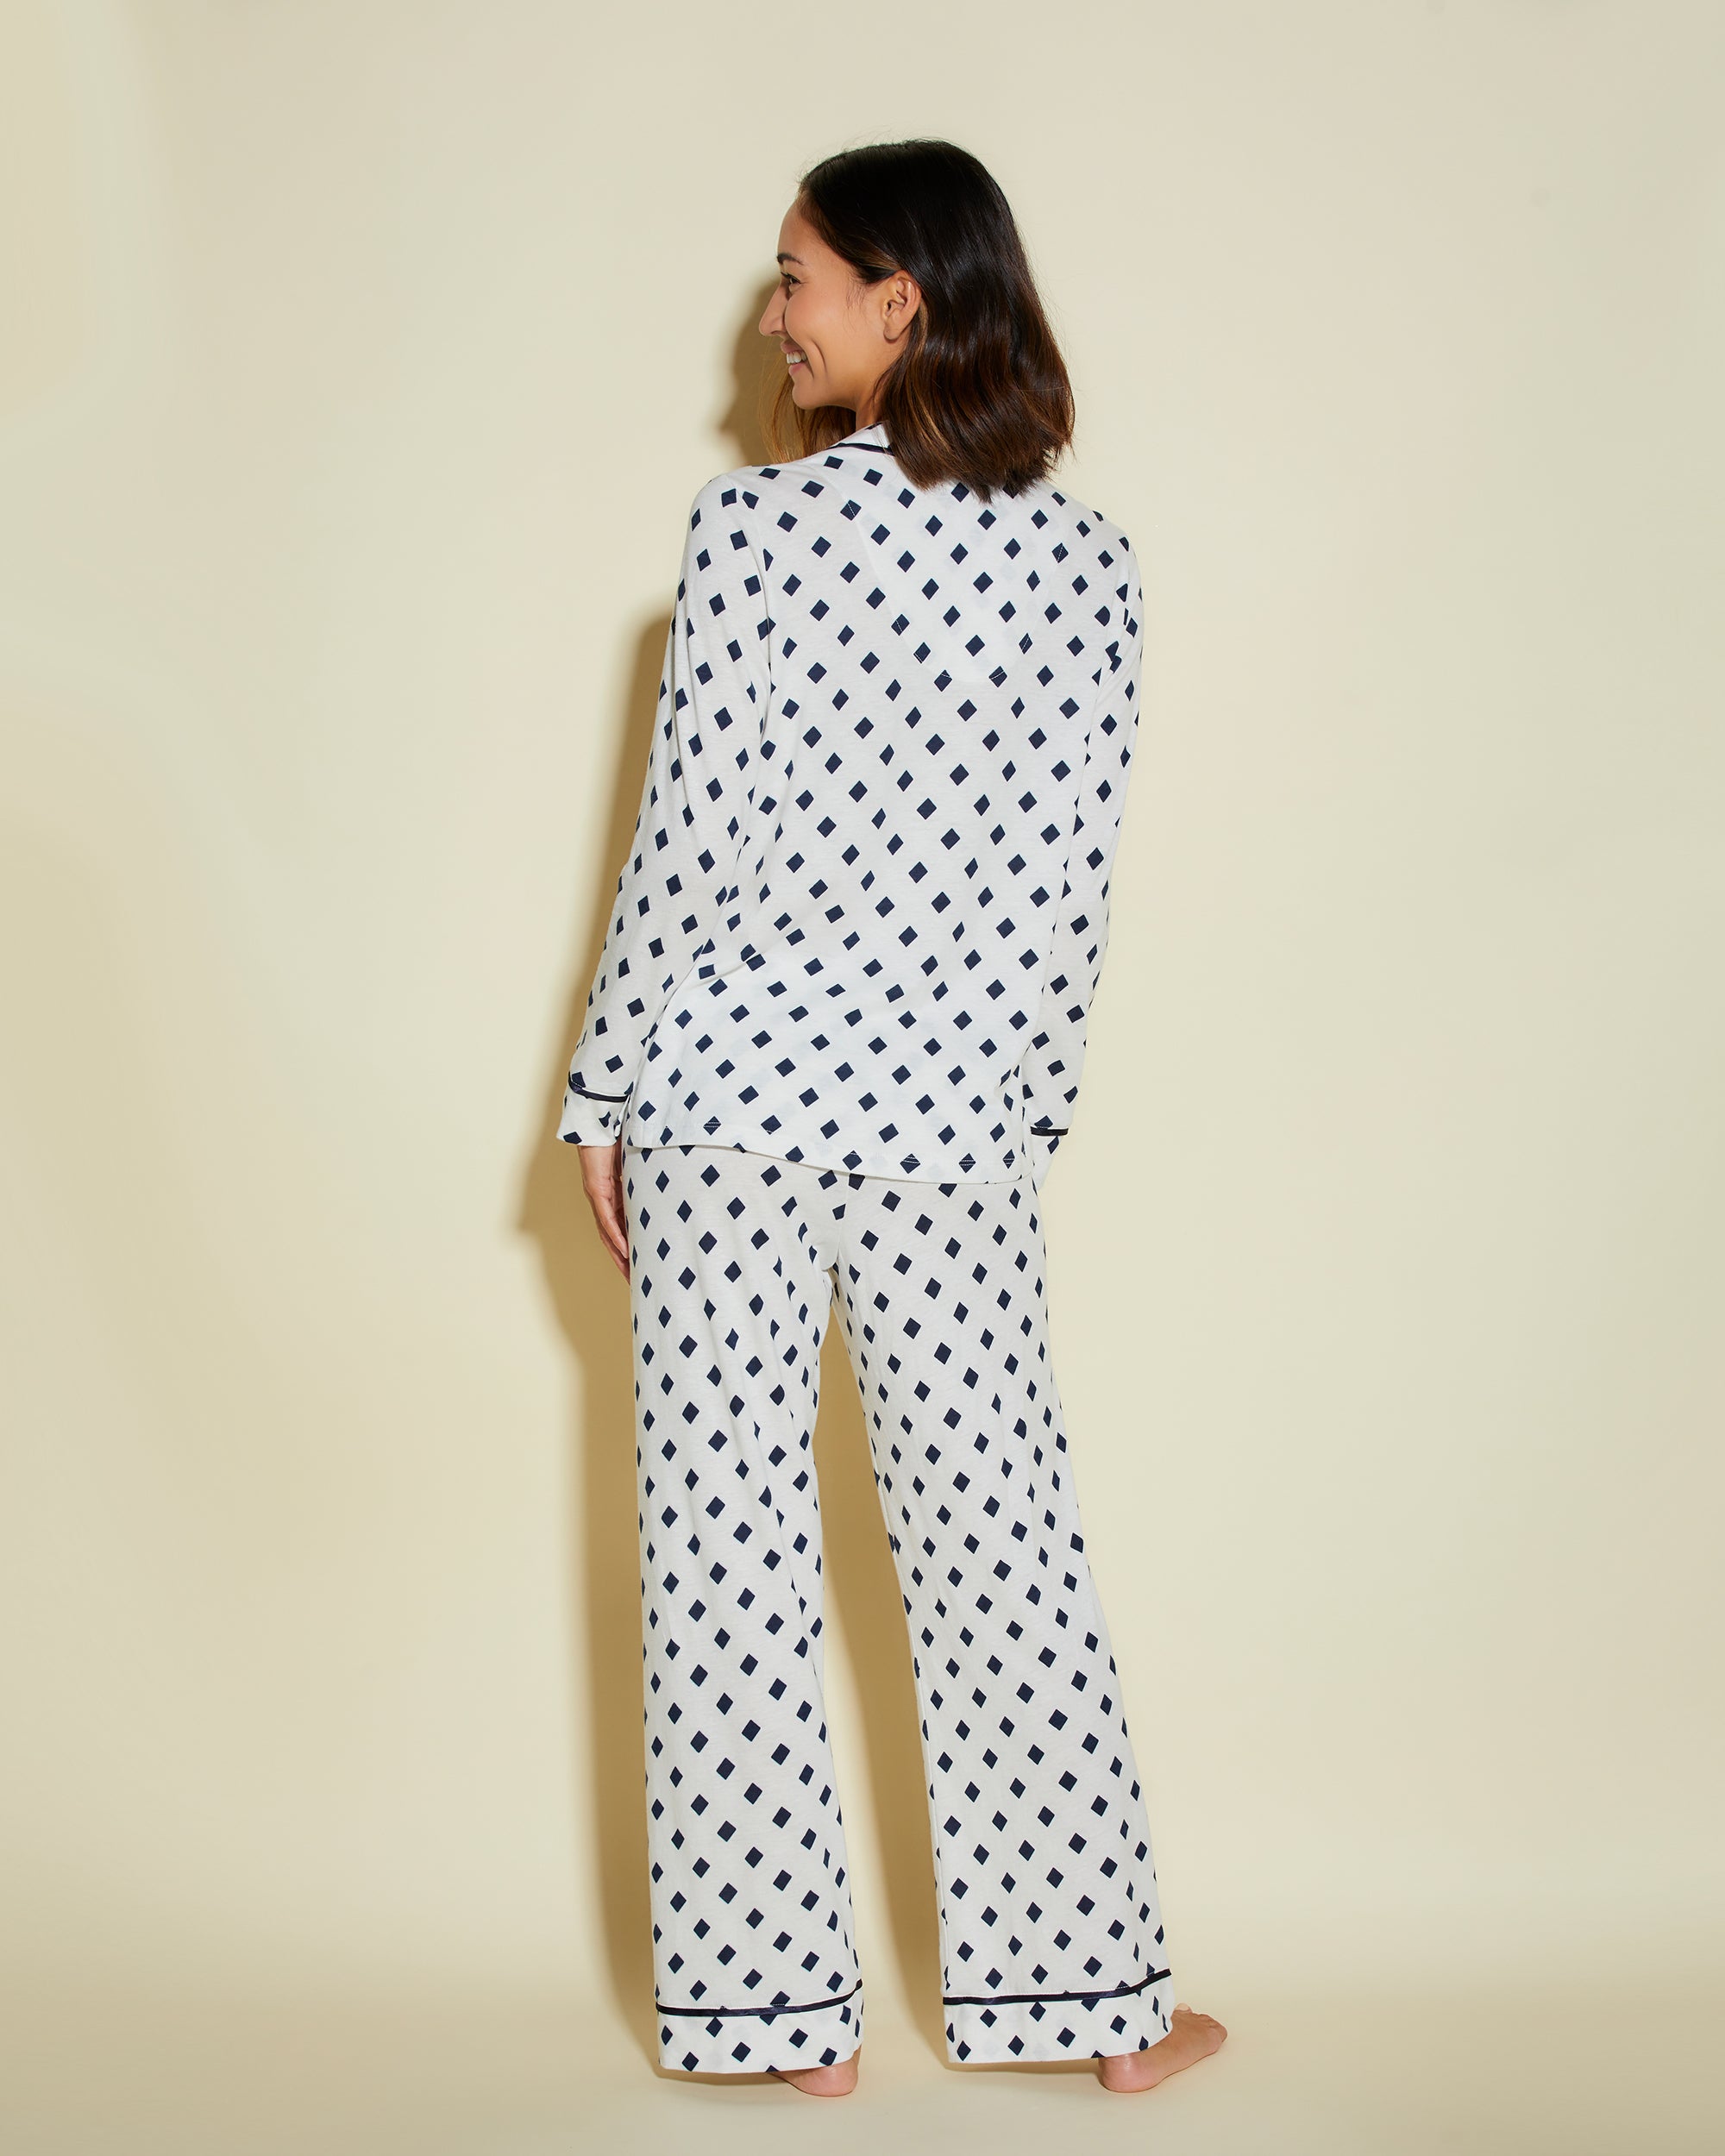 Cosabella | Bella Printed Petite Long Sleeve Top & Pant Pajama Set